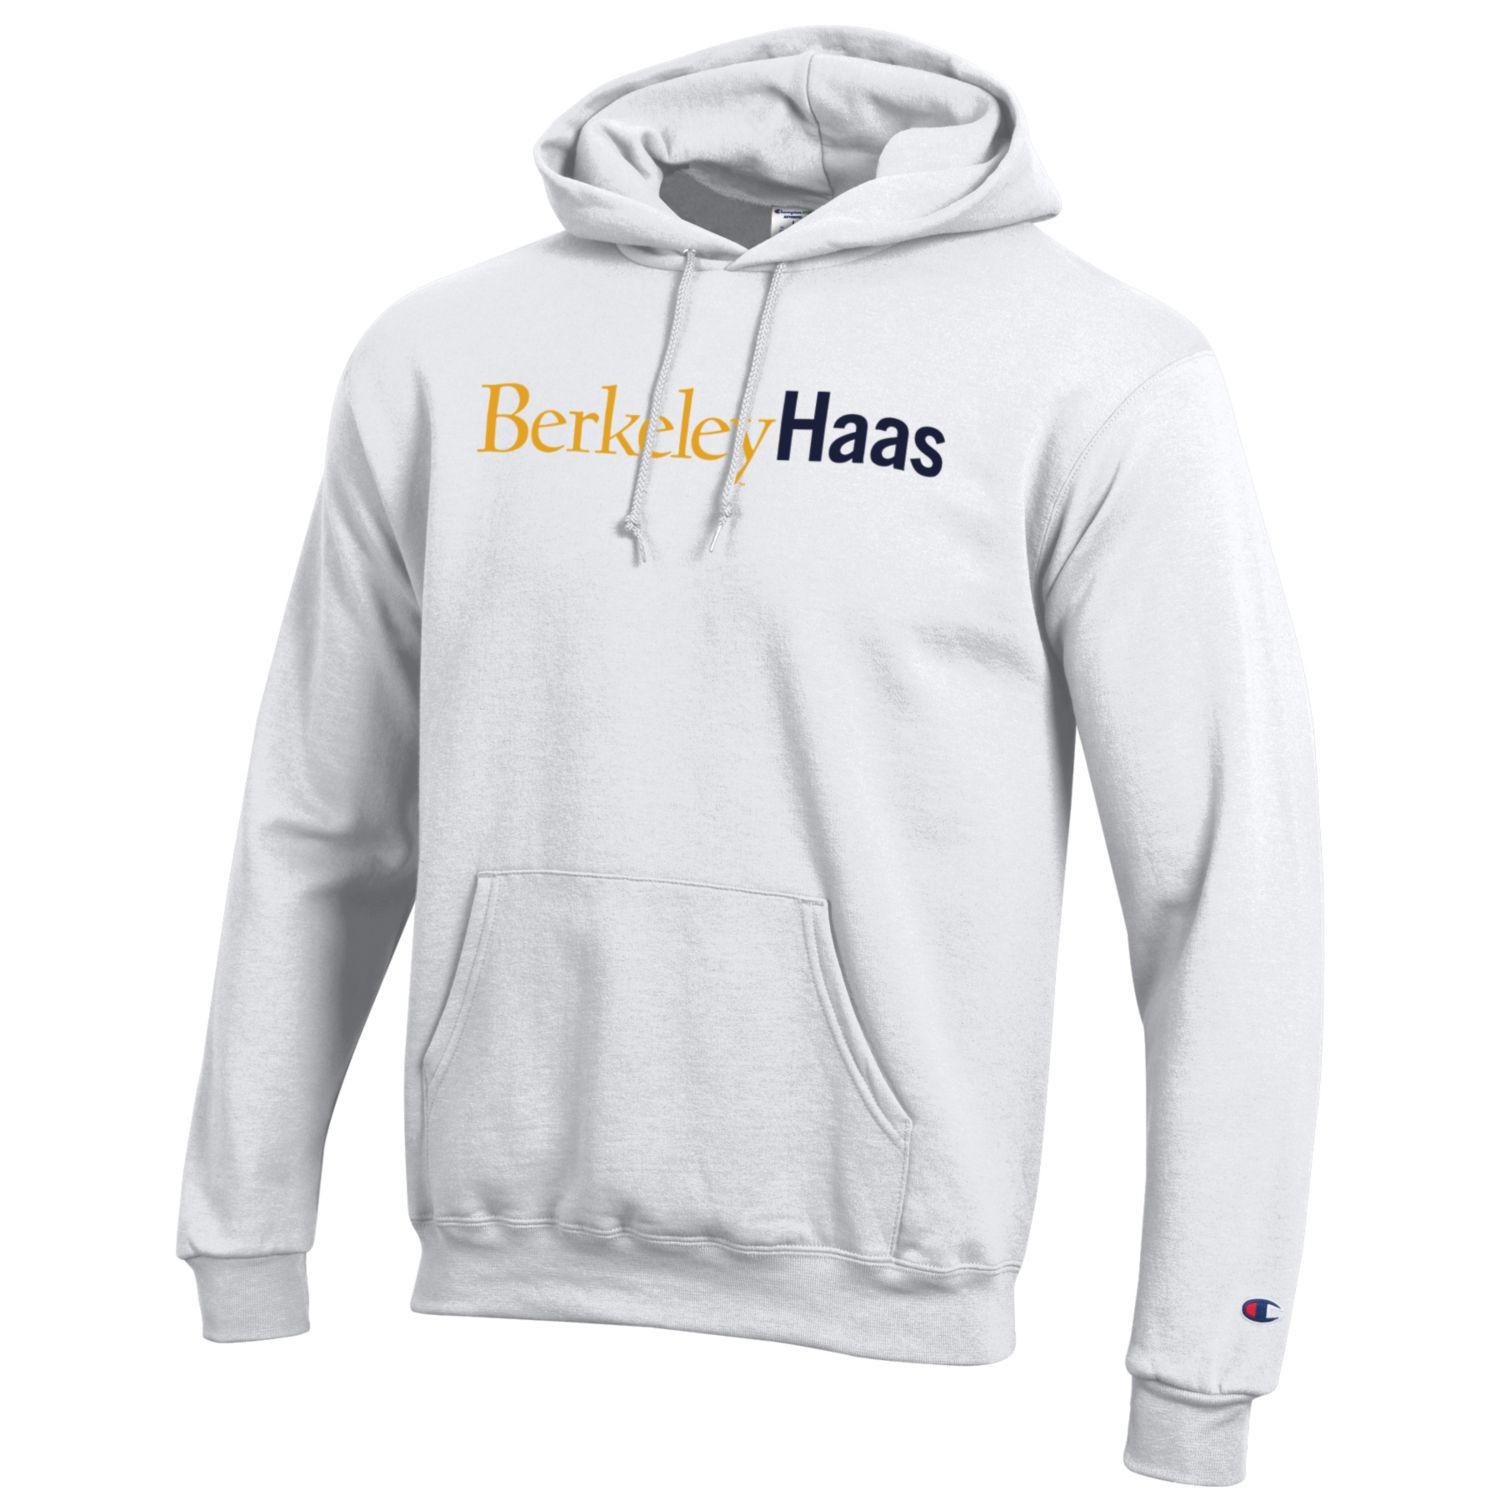 U.C. Berkeley Haas Business School hoodie sweatshirt-White-Shop College Wear